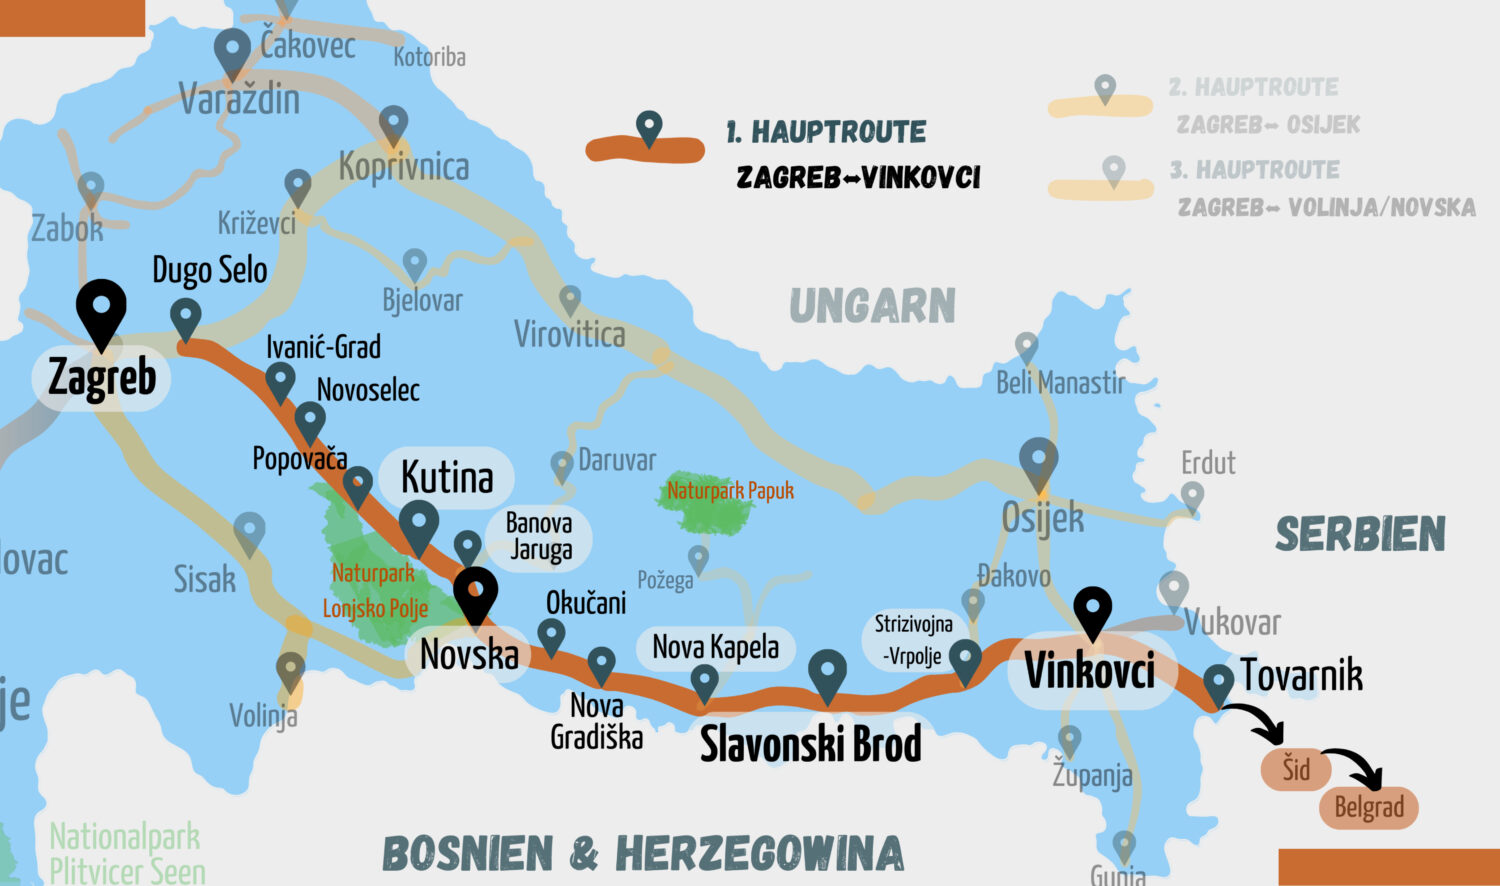 Hauptroute 1 - Zugstrecke von Zagreb nach Vinkovci. Kartenausschnitt des Eisenbahnnetzes im Norden und Osten von Kroatien. Landesinnere von Zagreb über die Moslavina und Slavonski Brod nach Vinkovci. Streckenverlauf im Süden von Slawonien. Hauptroute hervorgehoben.
East Rail